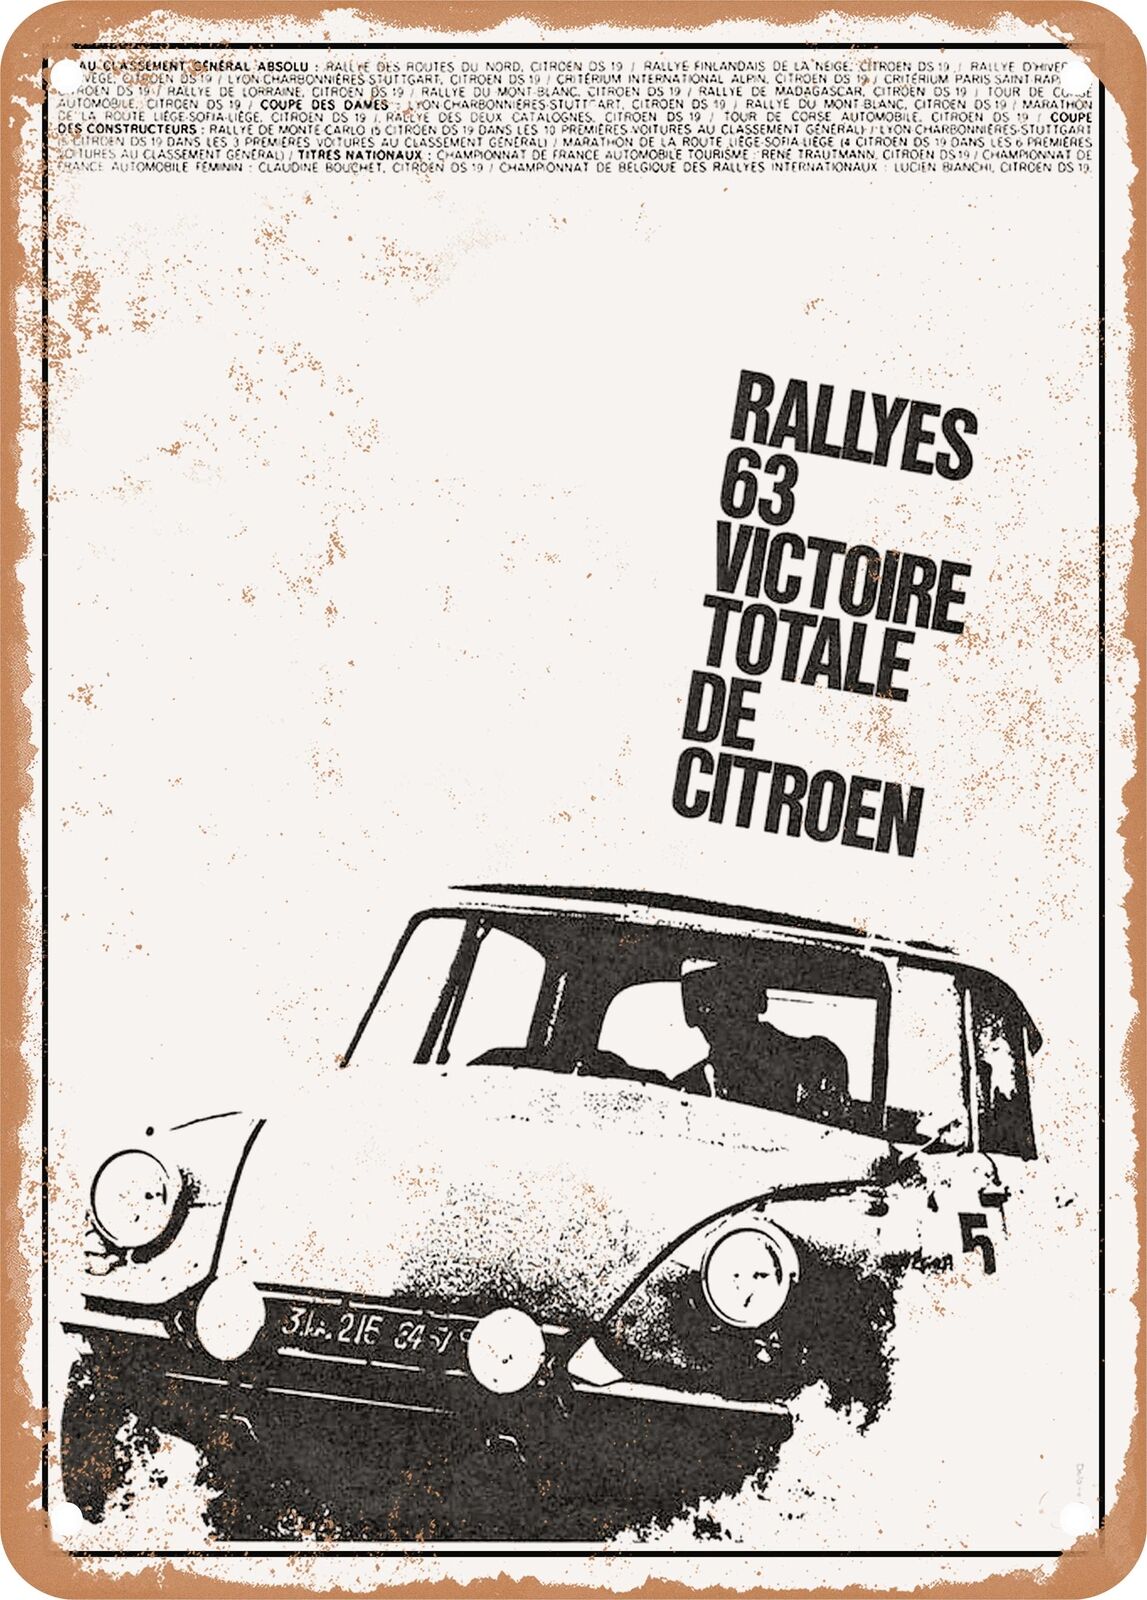 METAL SIGN - 1964 Citroen DS Rallyes 63 Victoire Totale de Citroen Vintage Ad